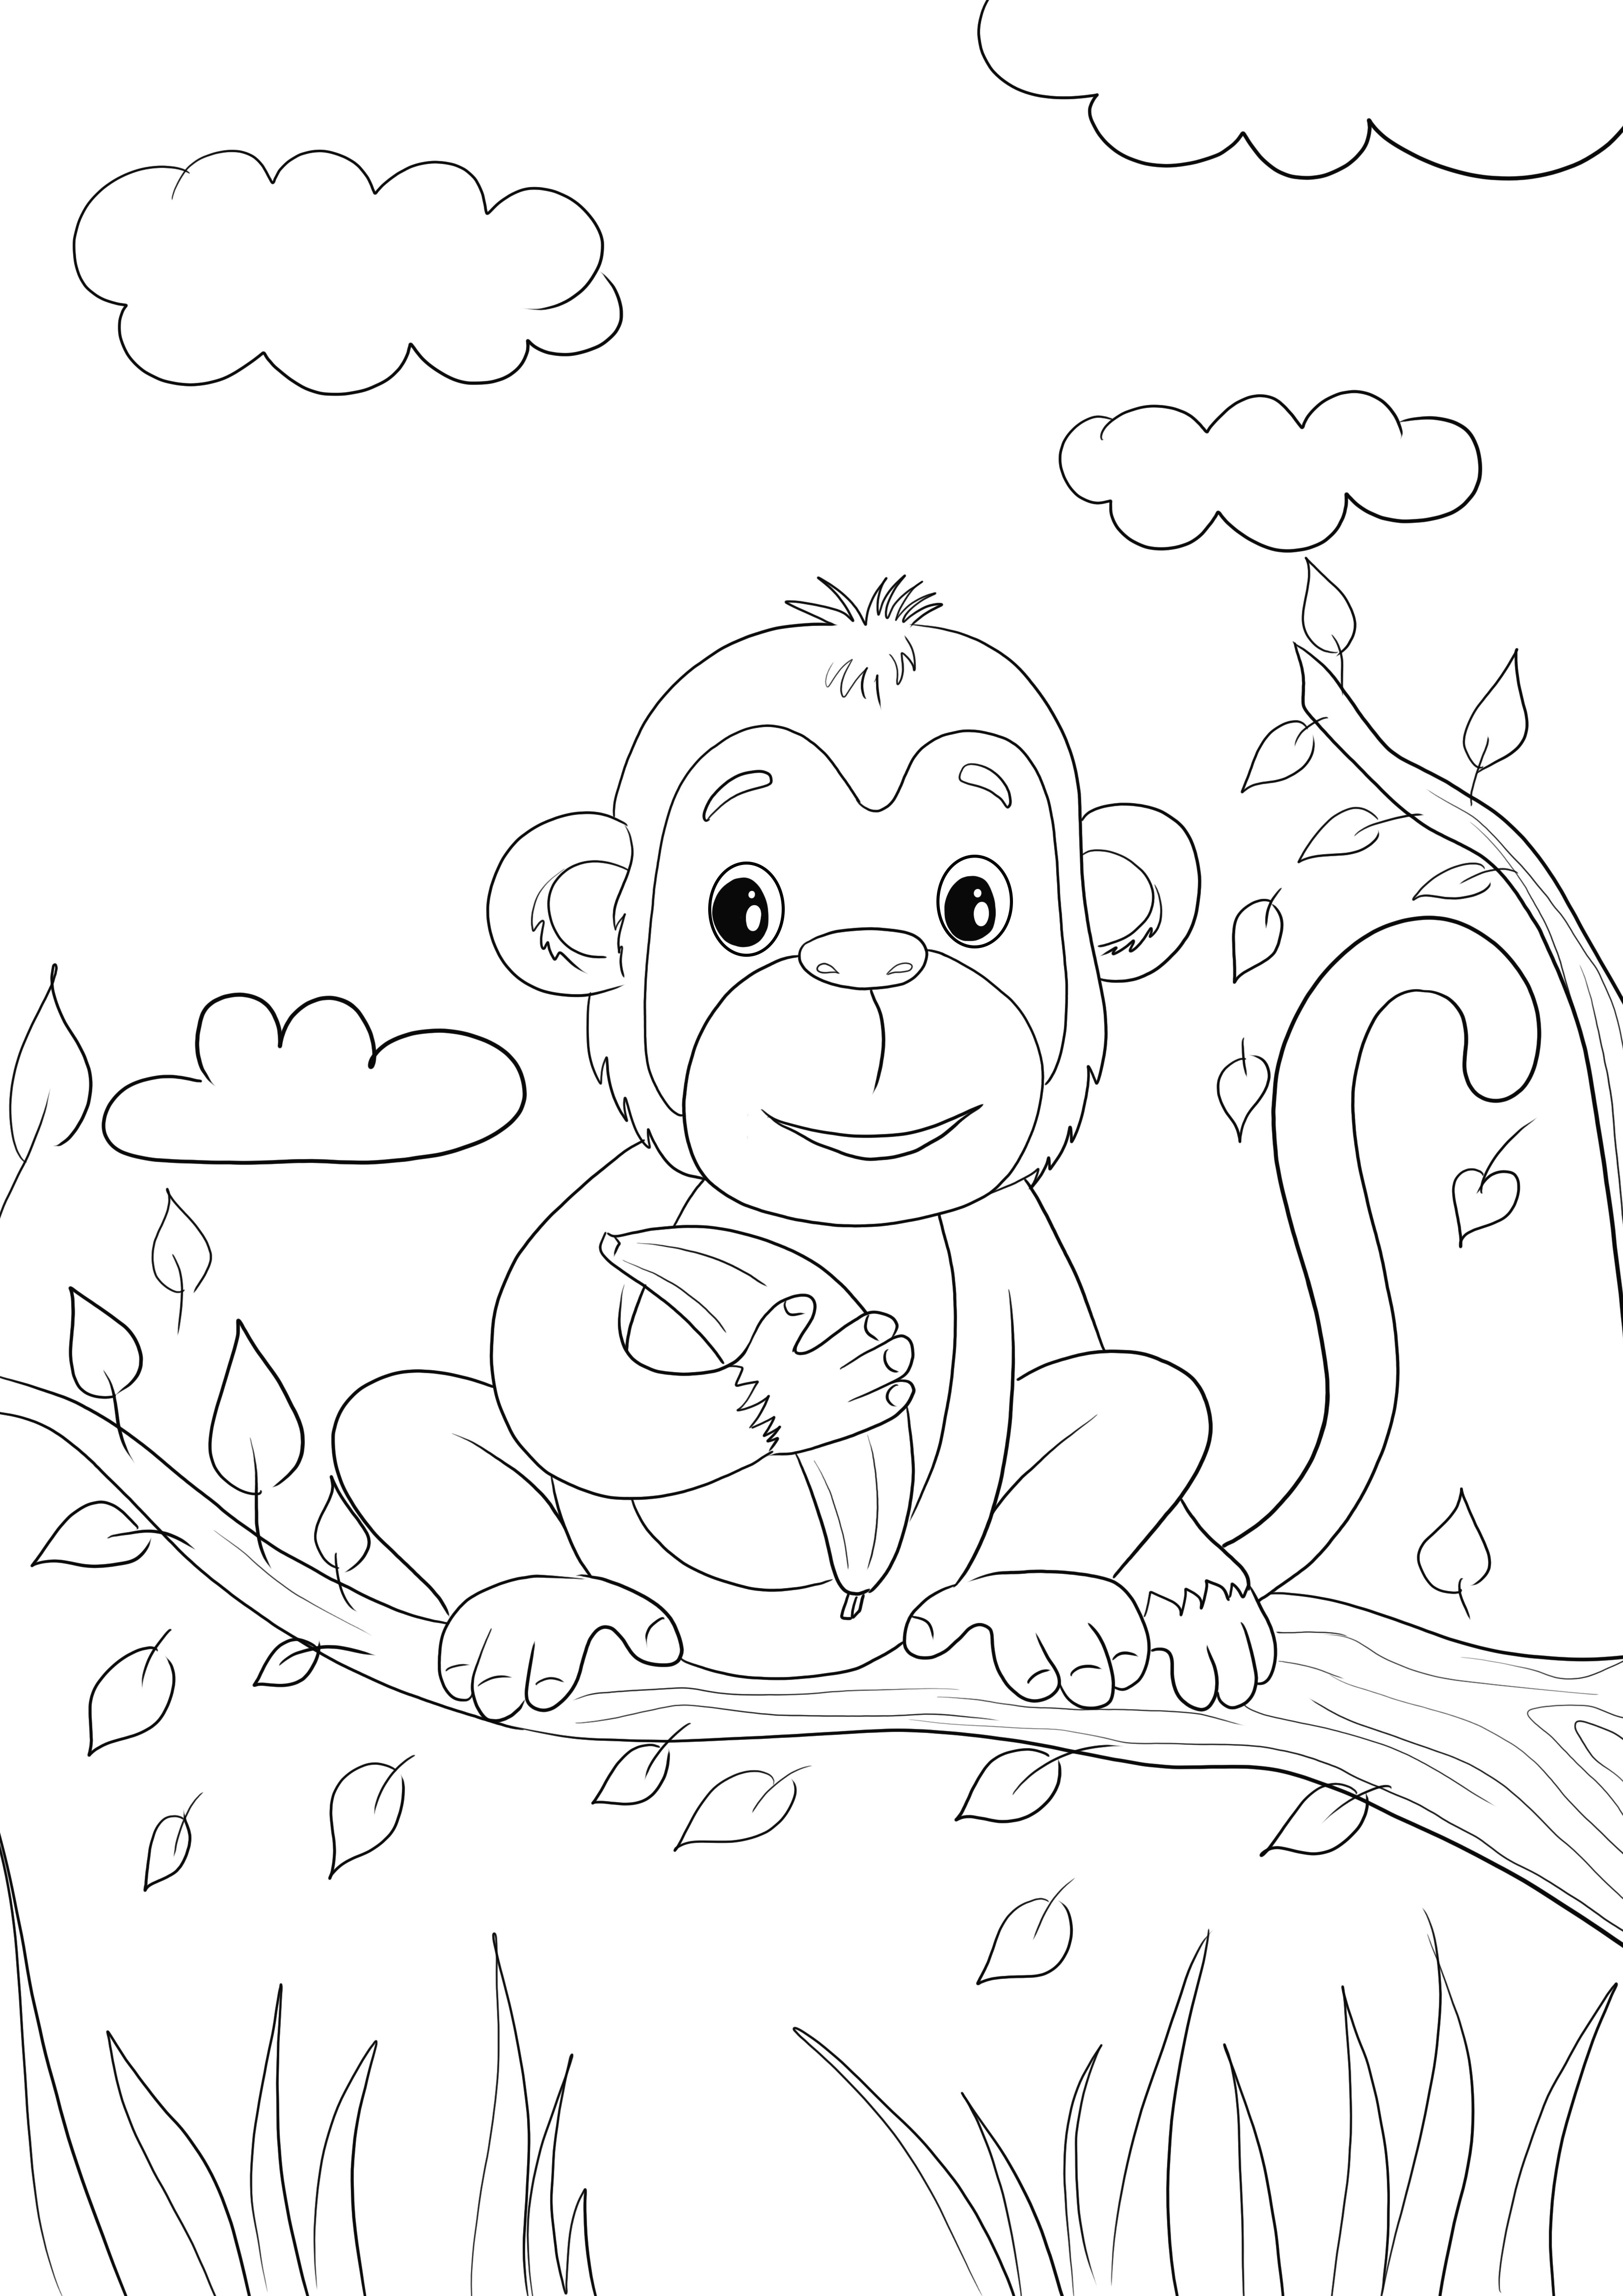 Tässä on söpö apinavauva, jolla on banaanivärityskuva vapaasti tulostettavaksi tai tallennettavaksi myöhempää käyttöä varten